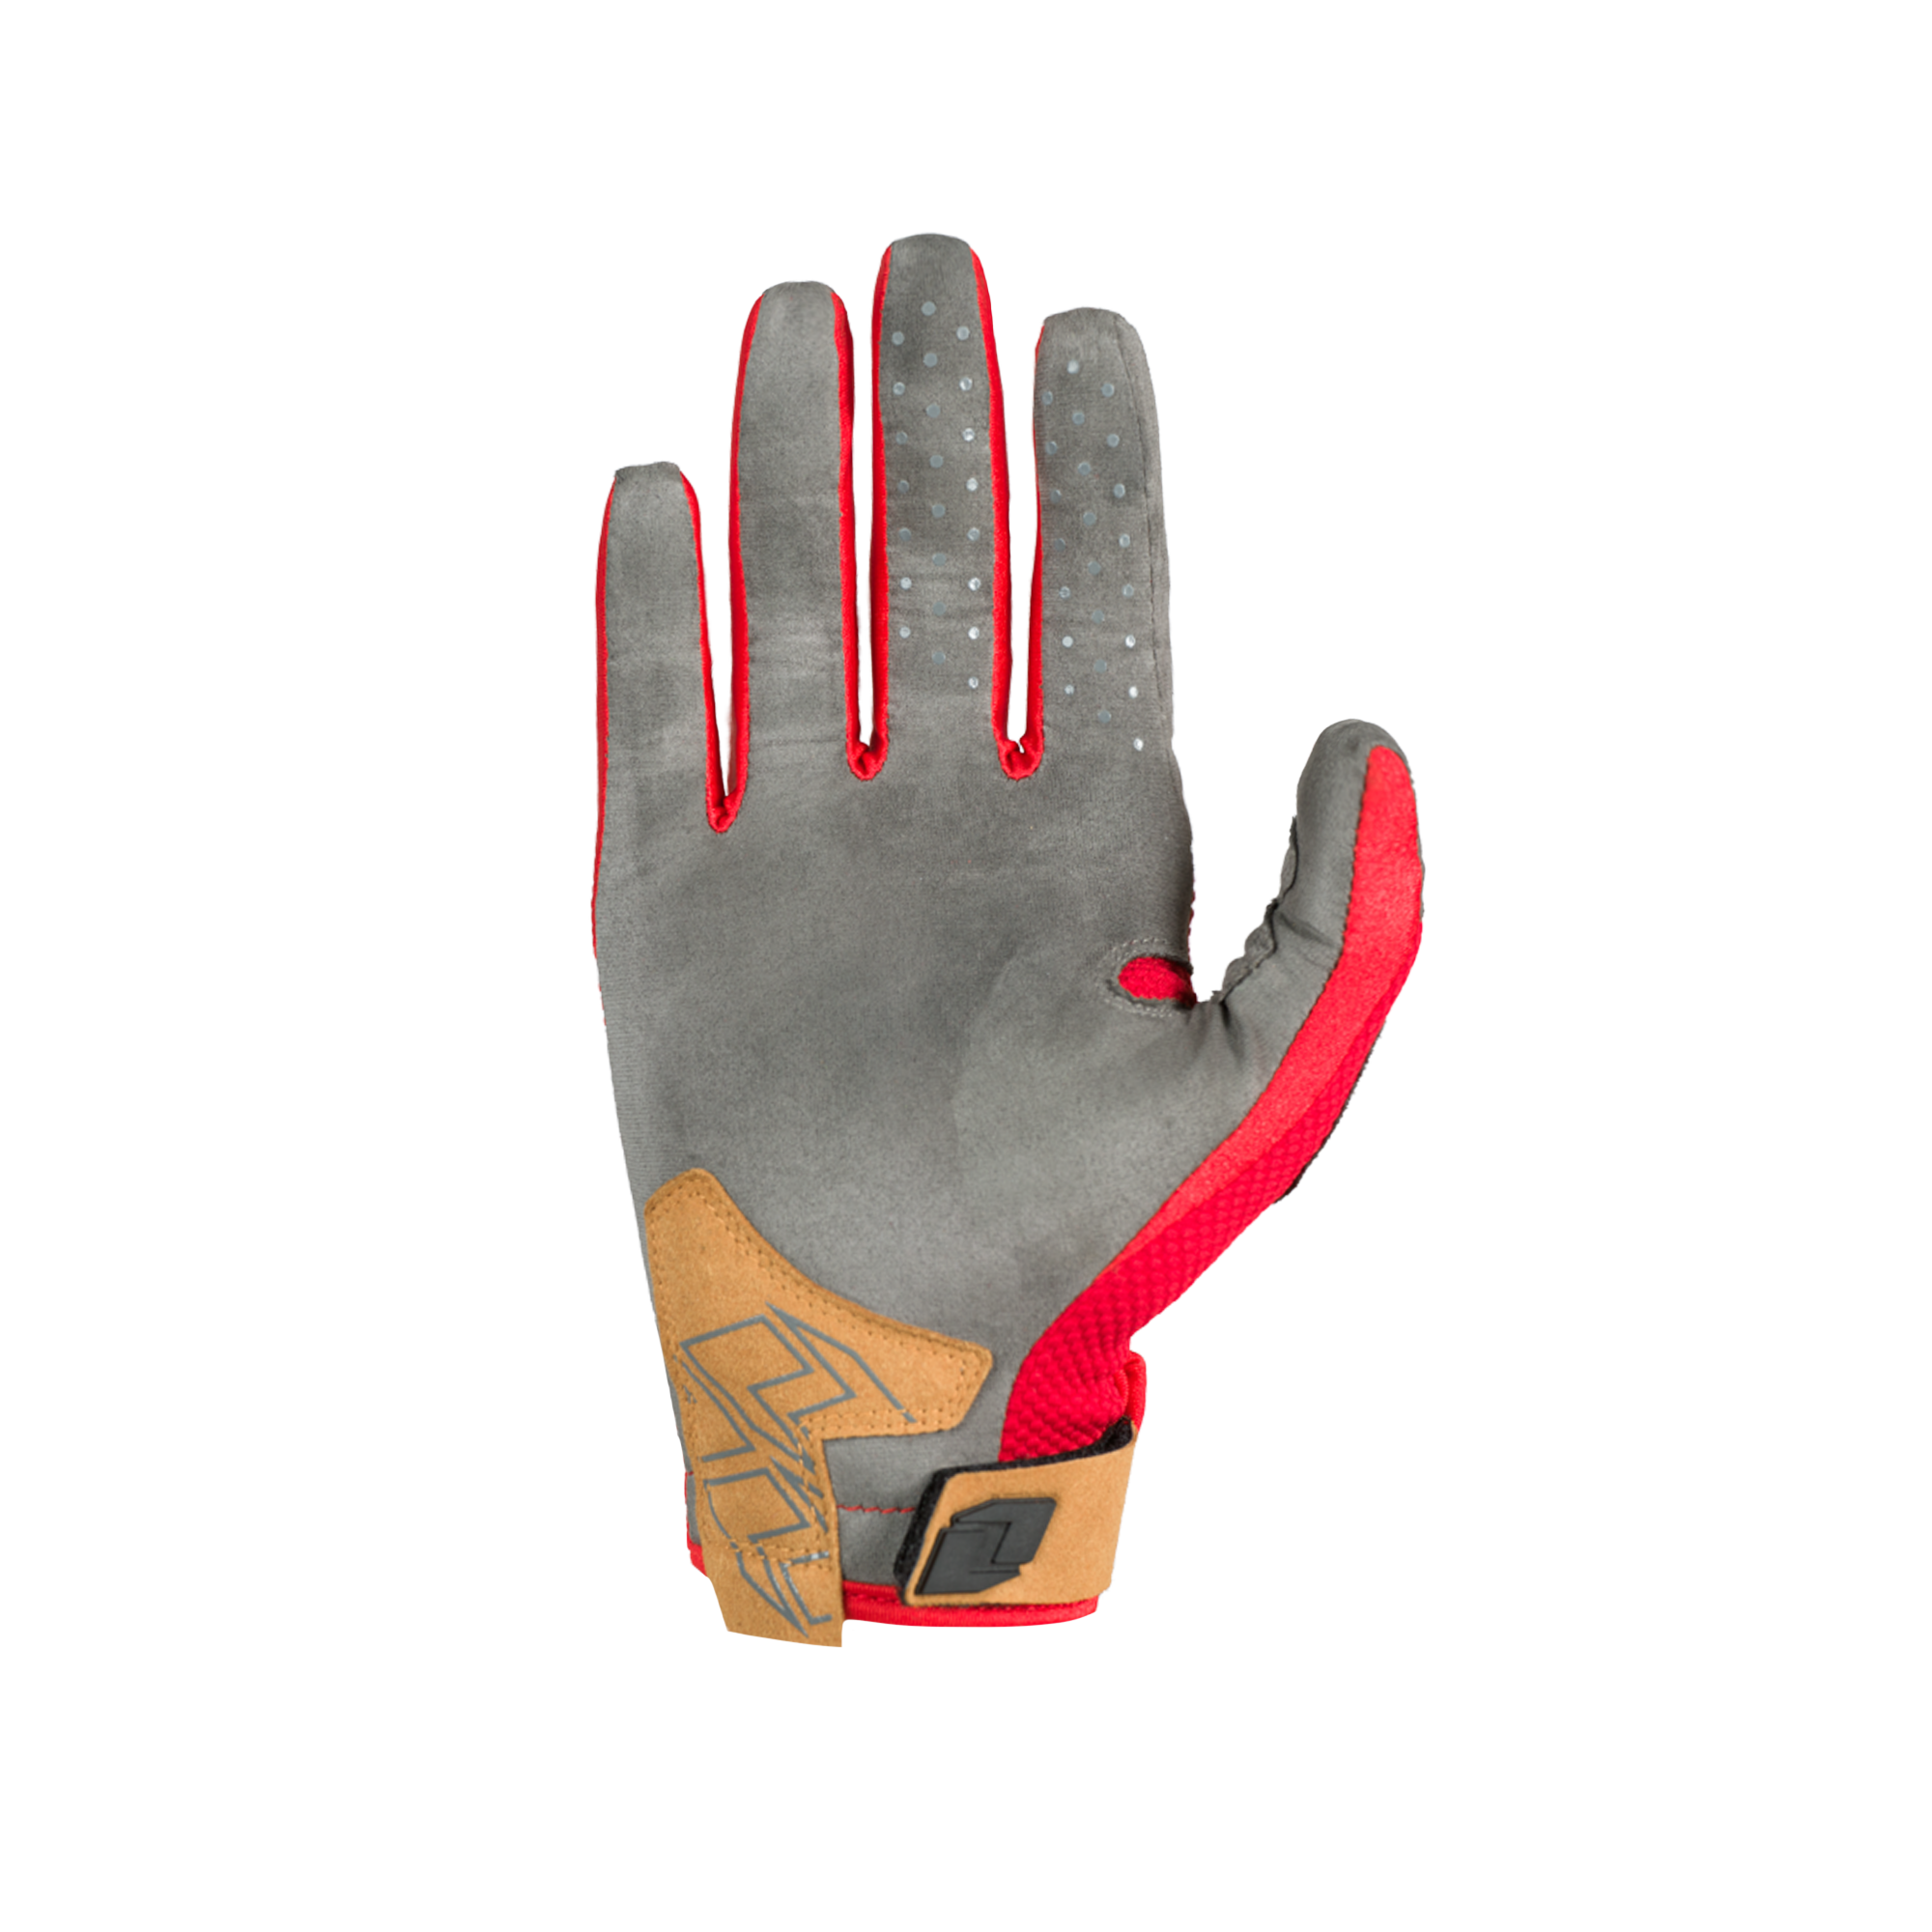 X-197 Glove - HALT RED